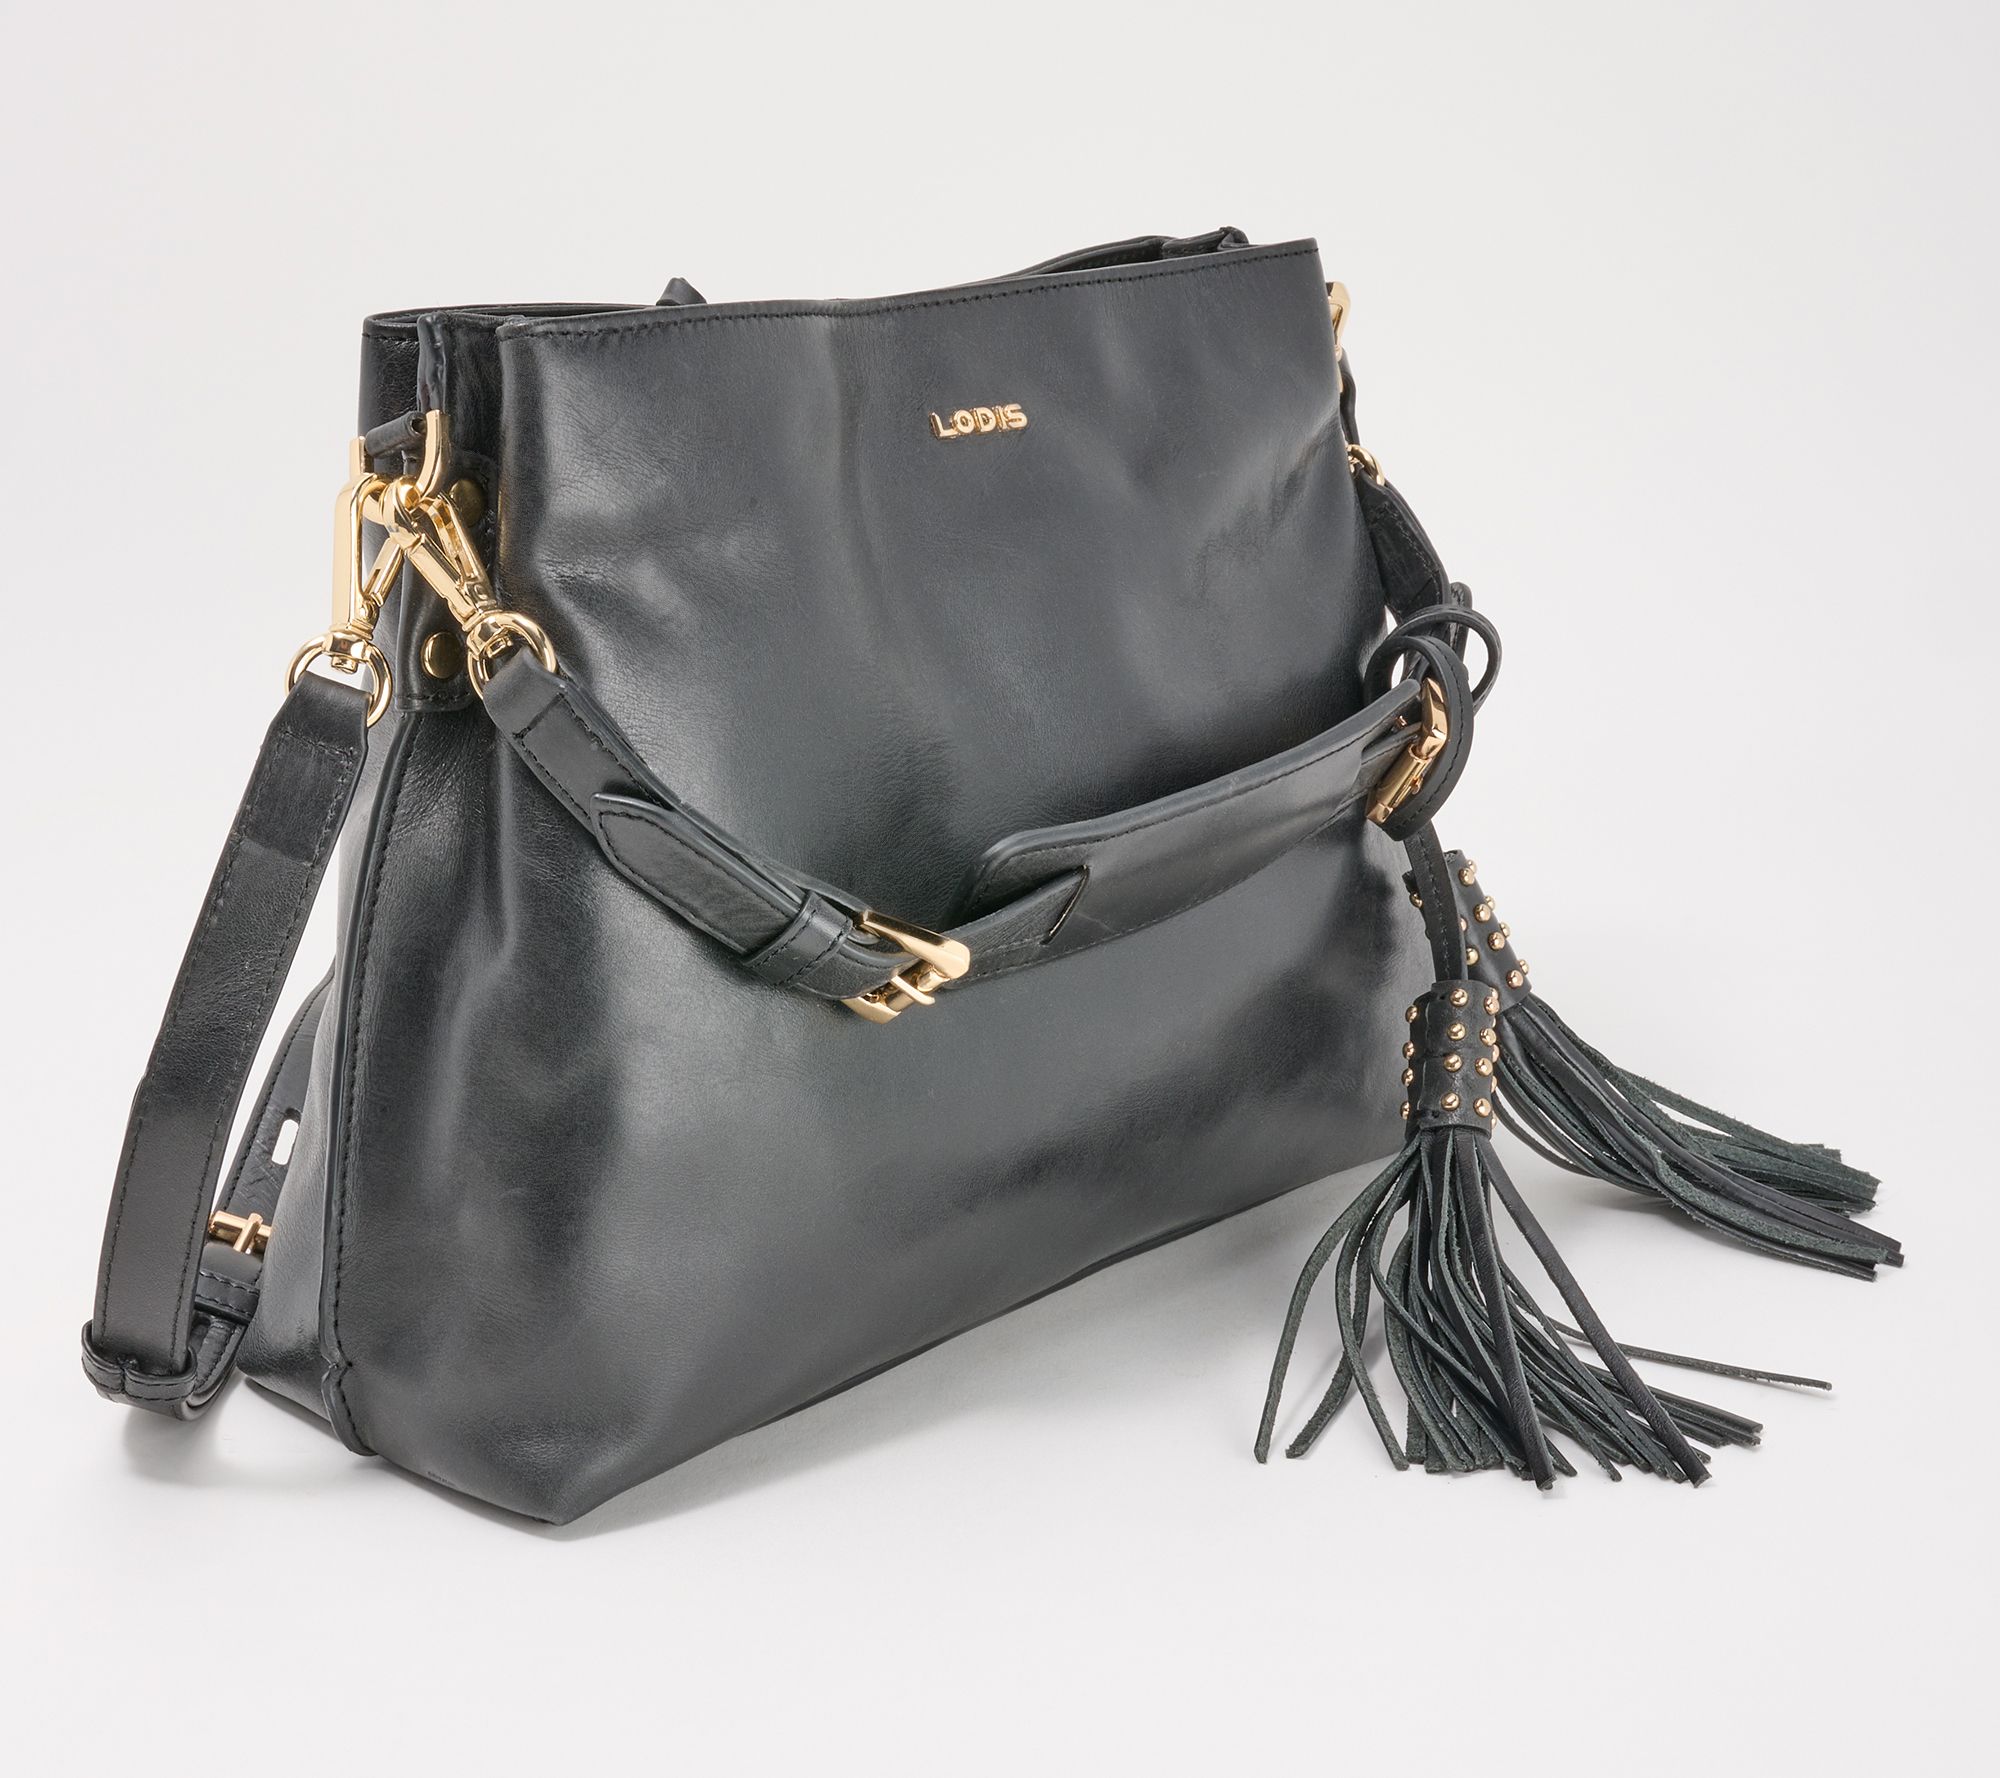 LODIS Glazed Leather Darcy Shoulder Bag 